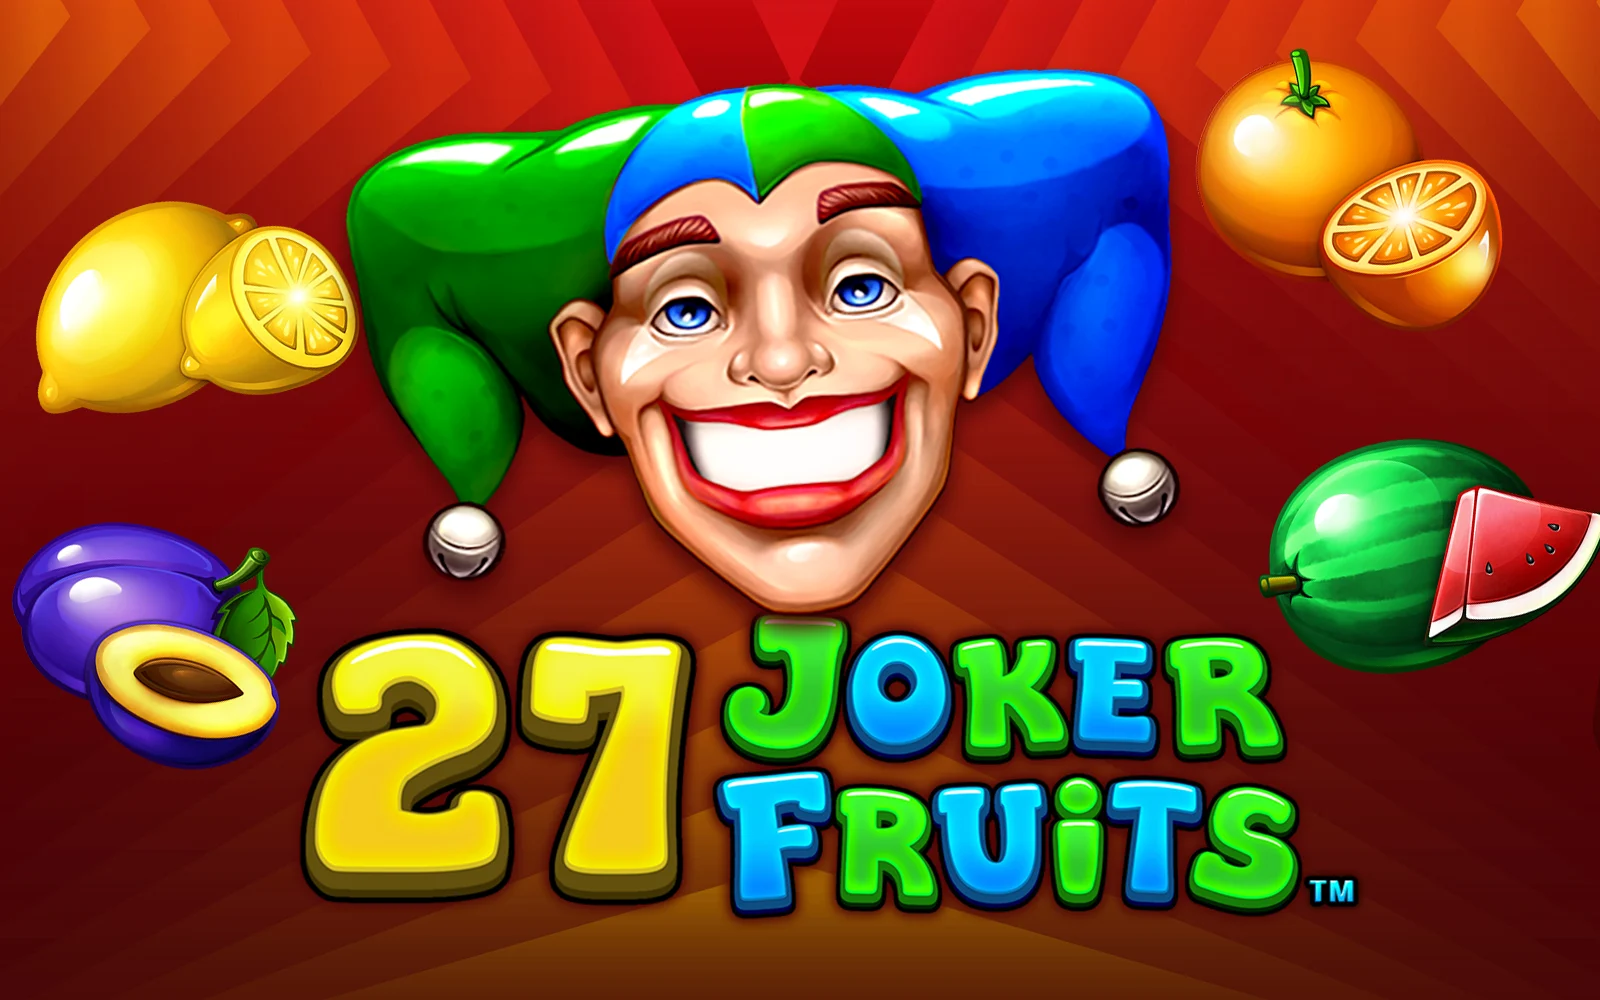 Zagraj w 27 Joker Fruits w kasynie online Starcasino.be